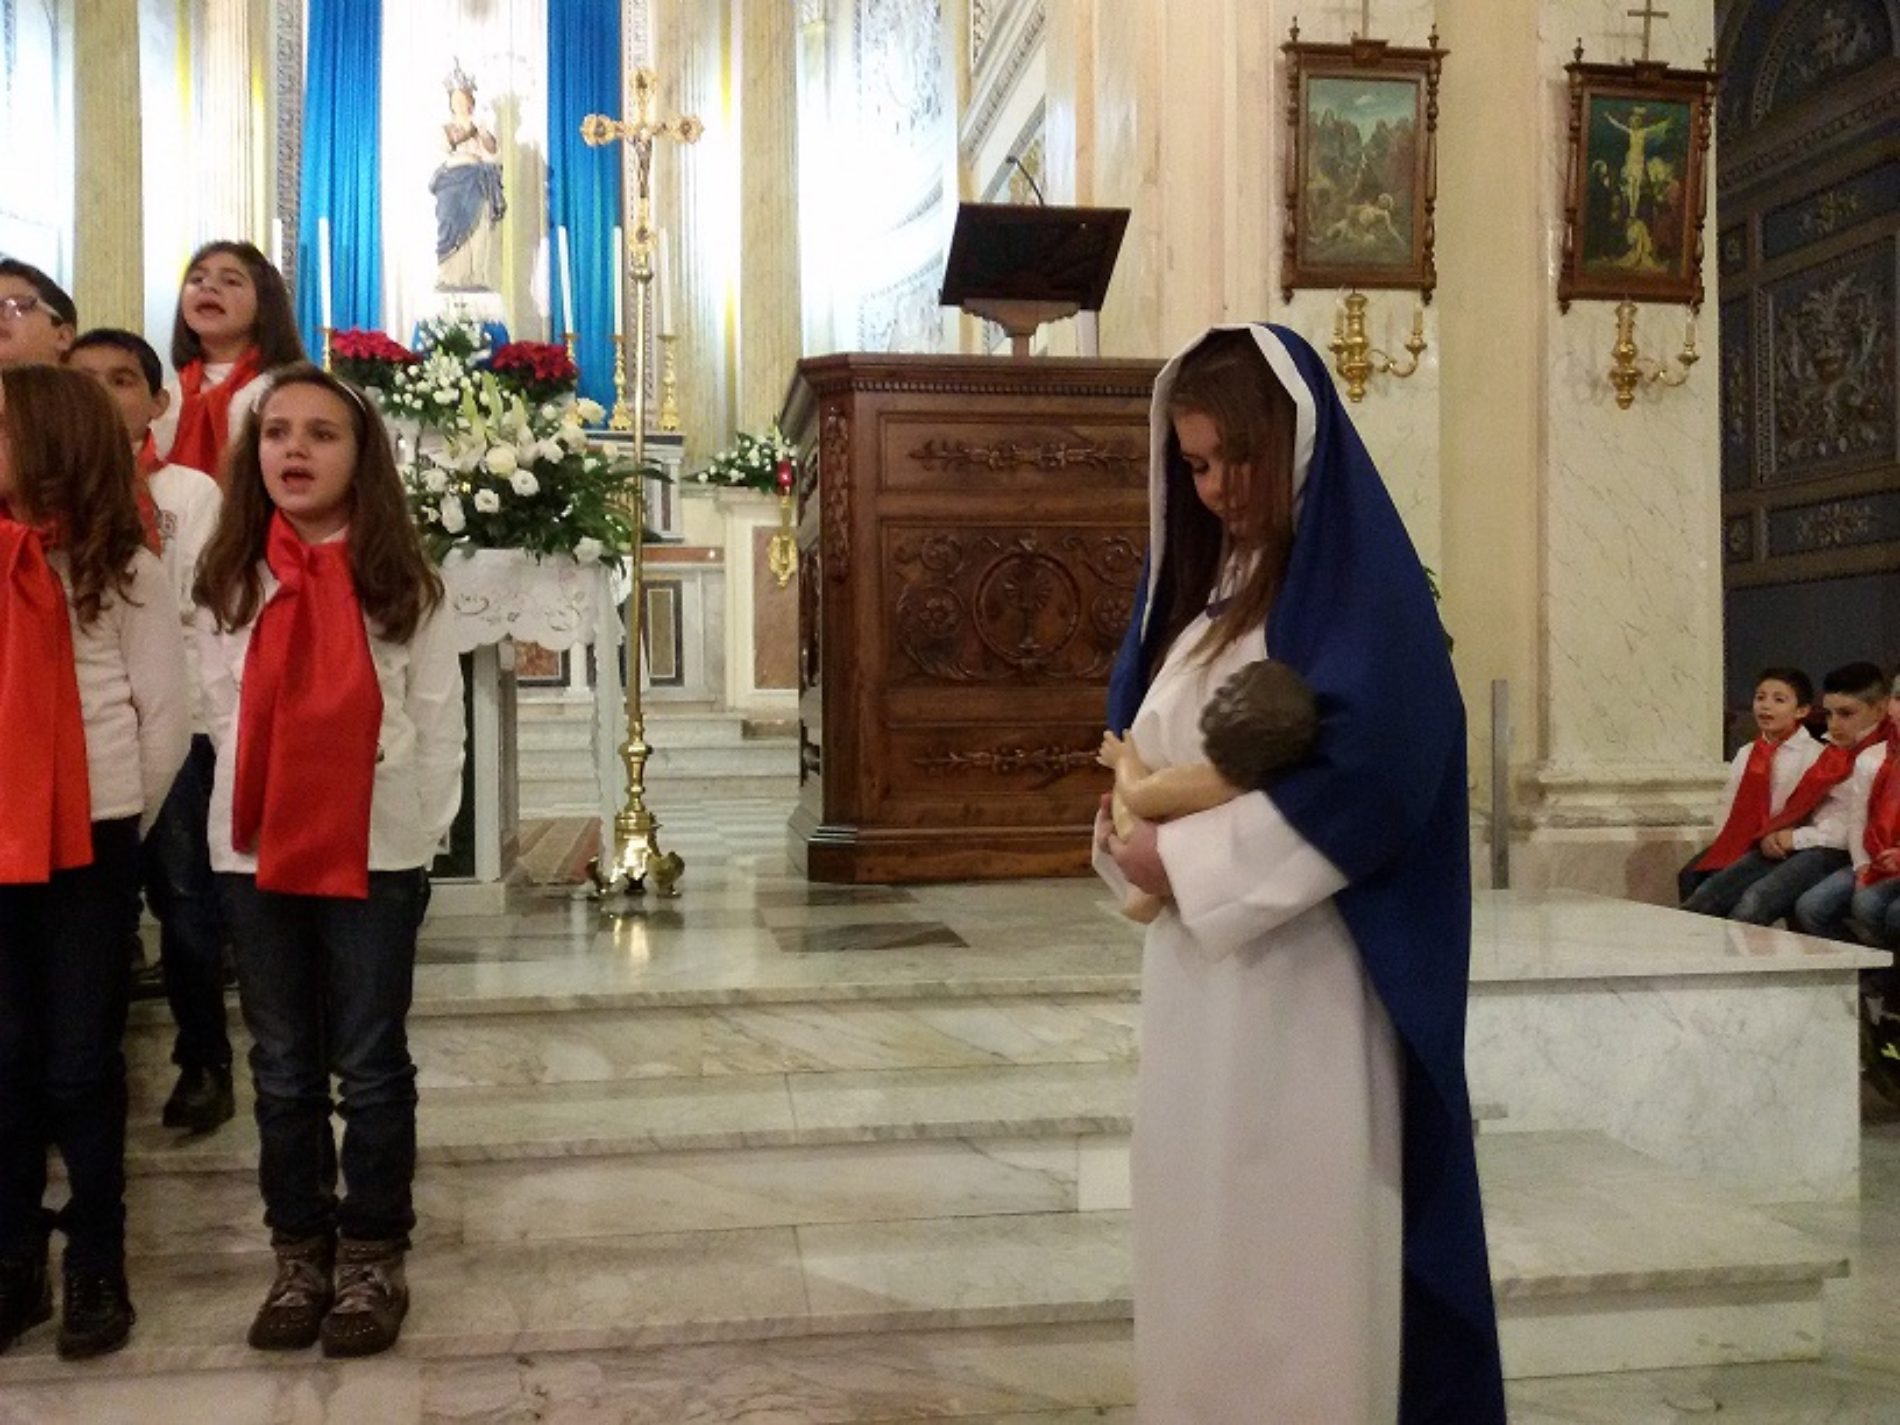 Canti natalizi in chiesa Madre: il “coro” dell’istituto San Giovanni Bosco